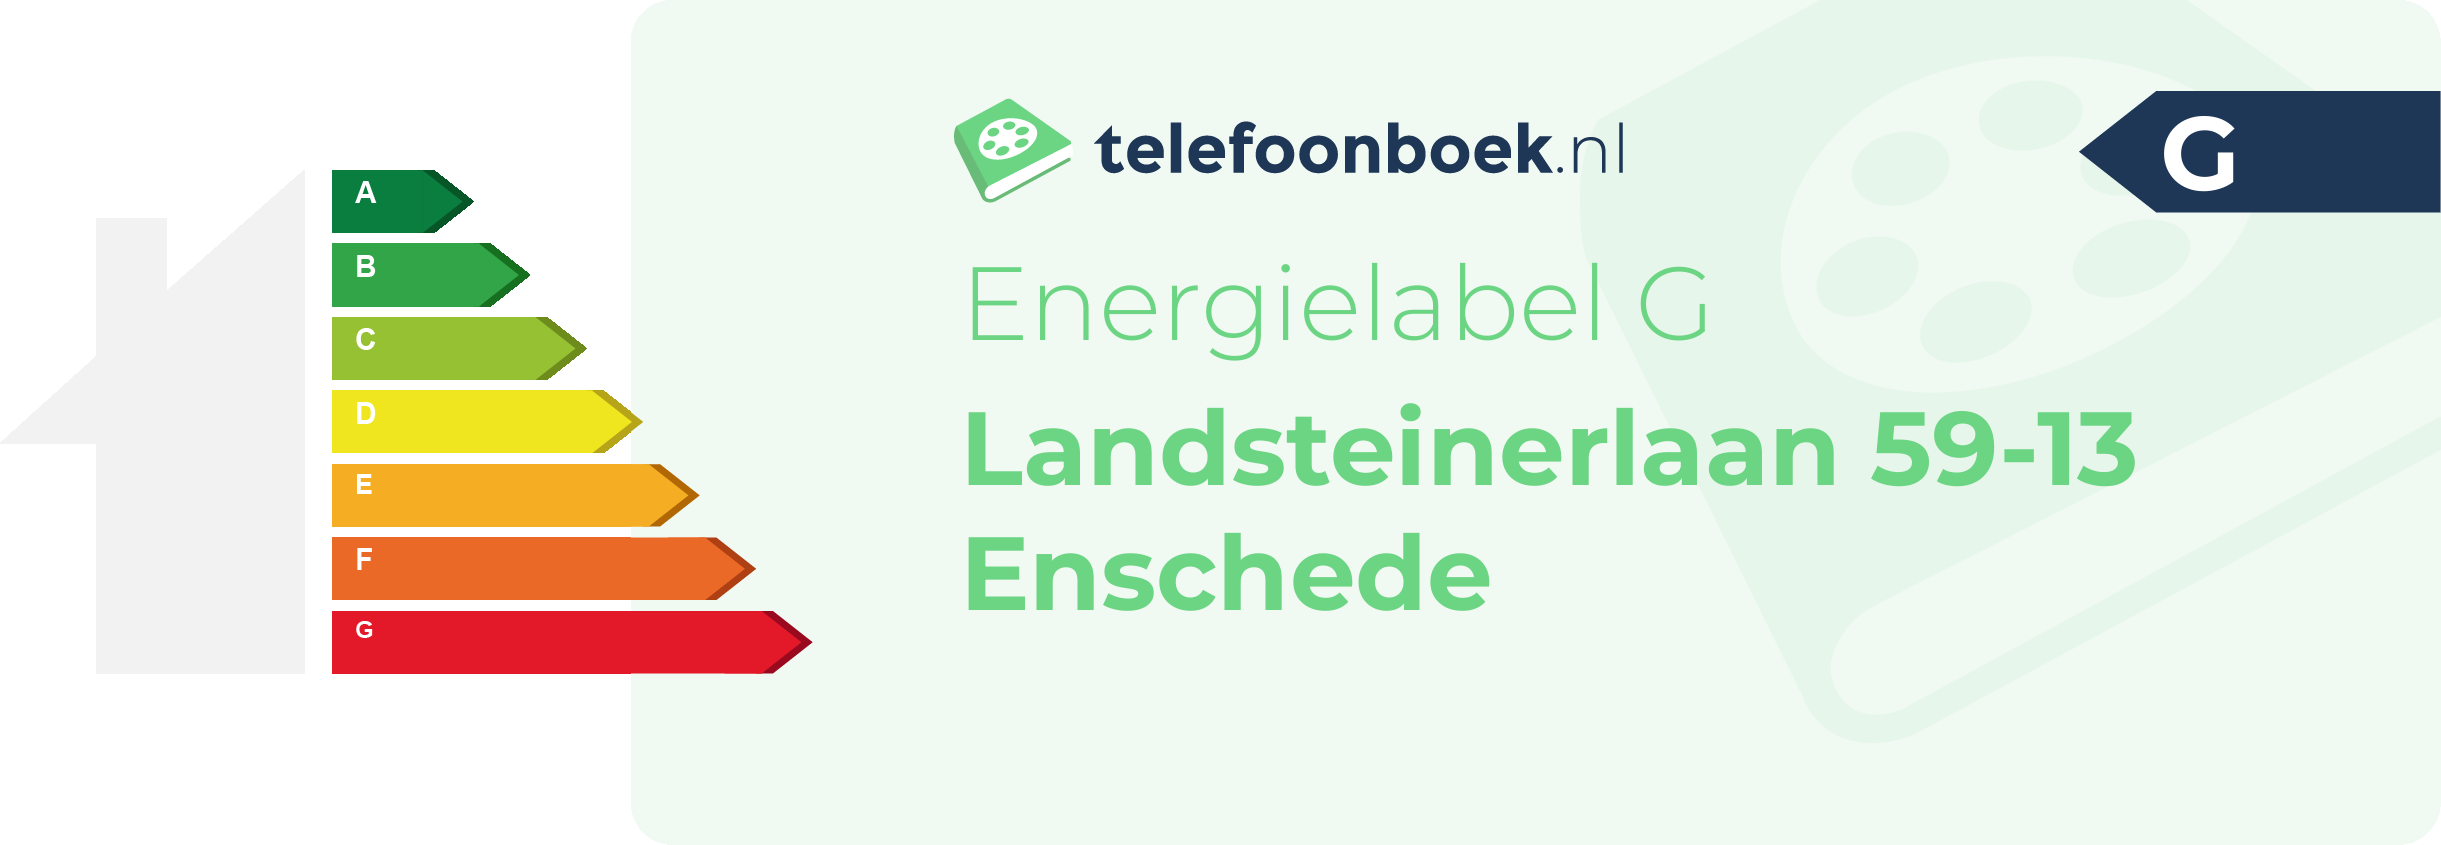 Energielabel Landsteinerlaan 59-13 Enschede